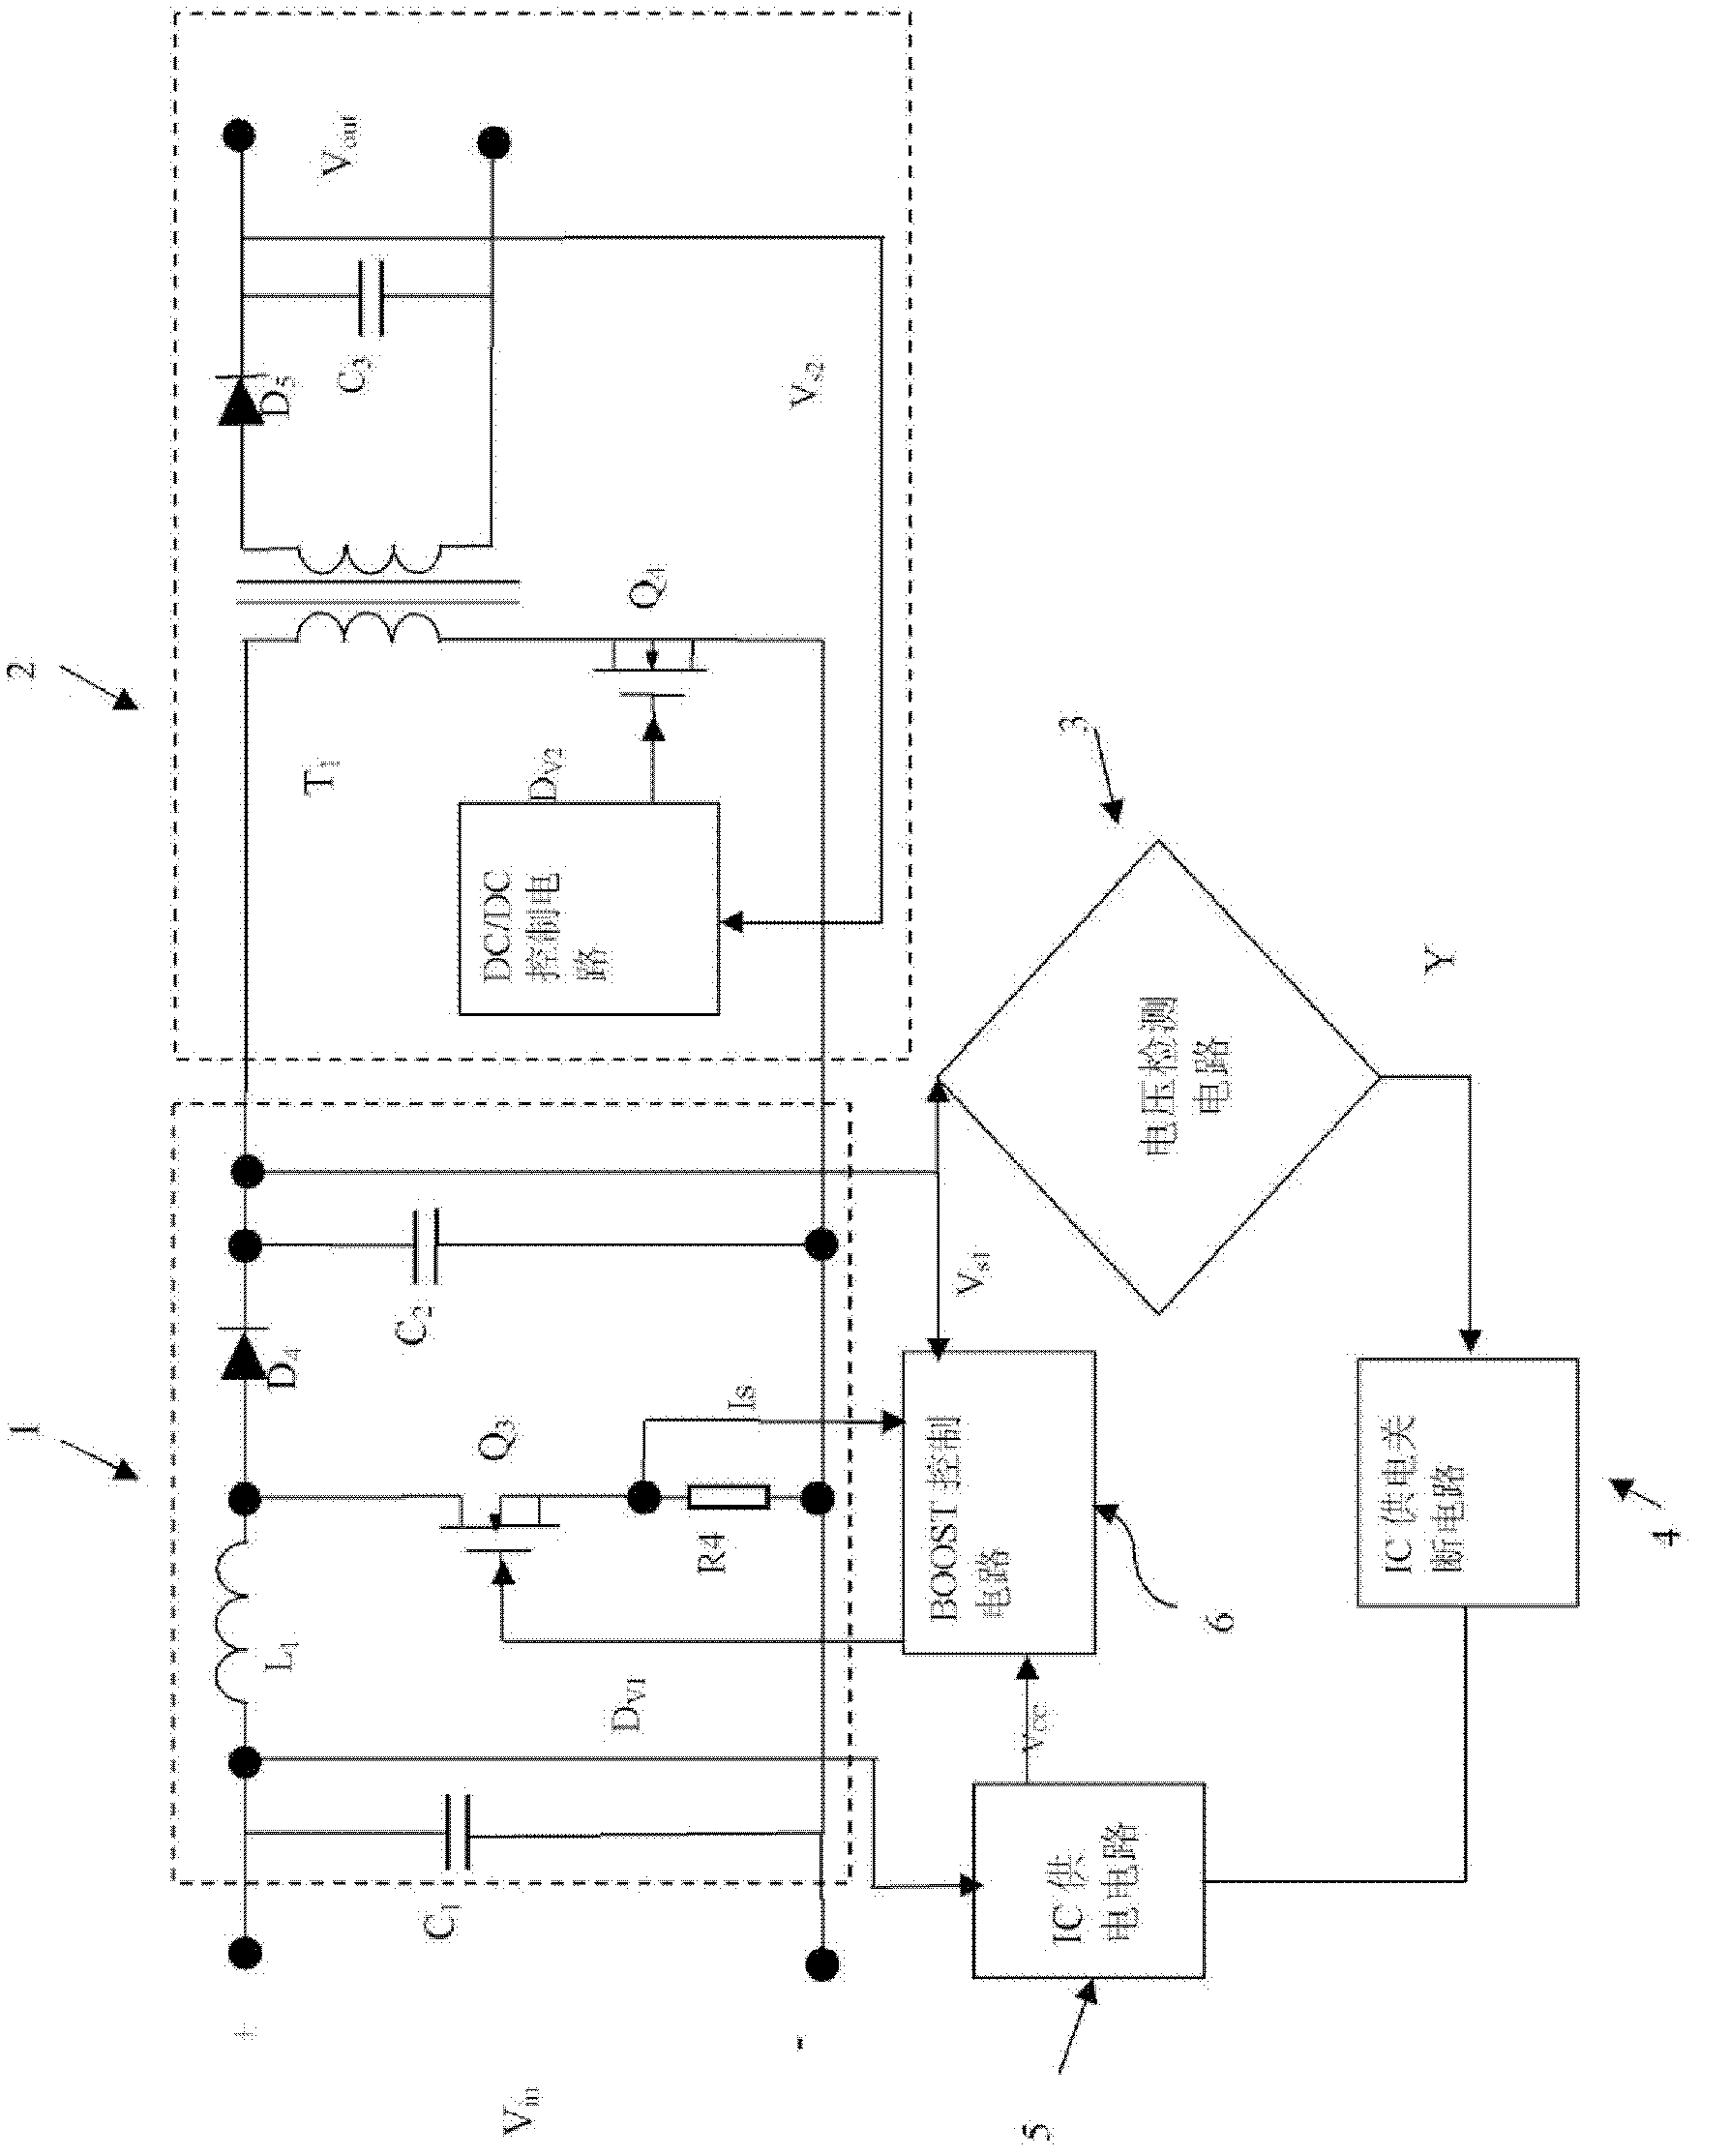 Wide-input-voltage power supply converter